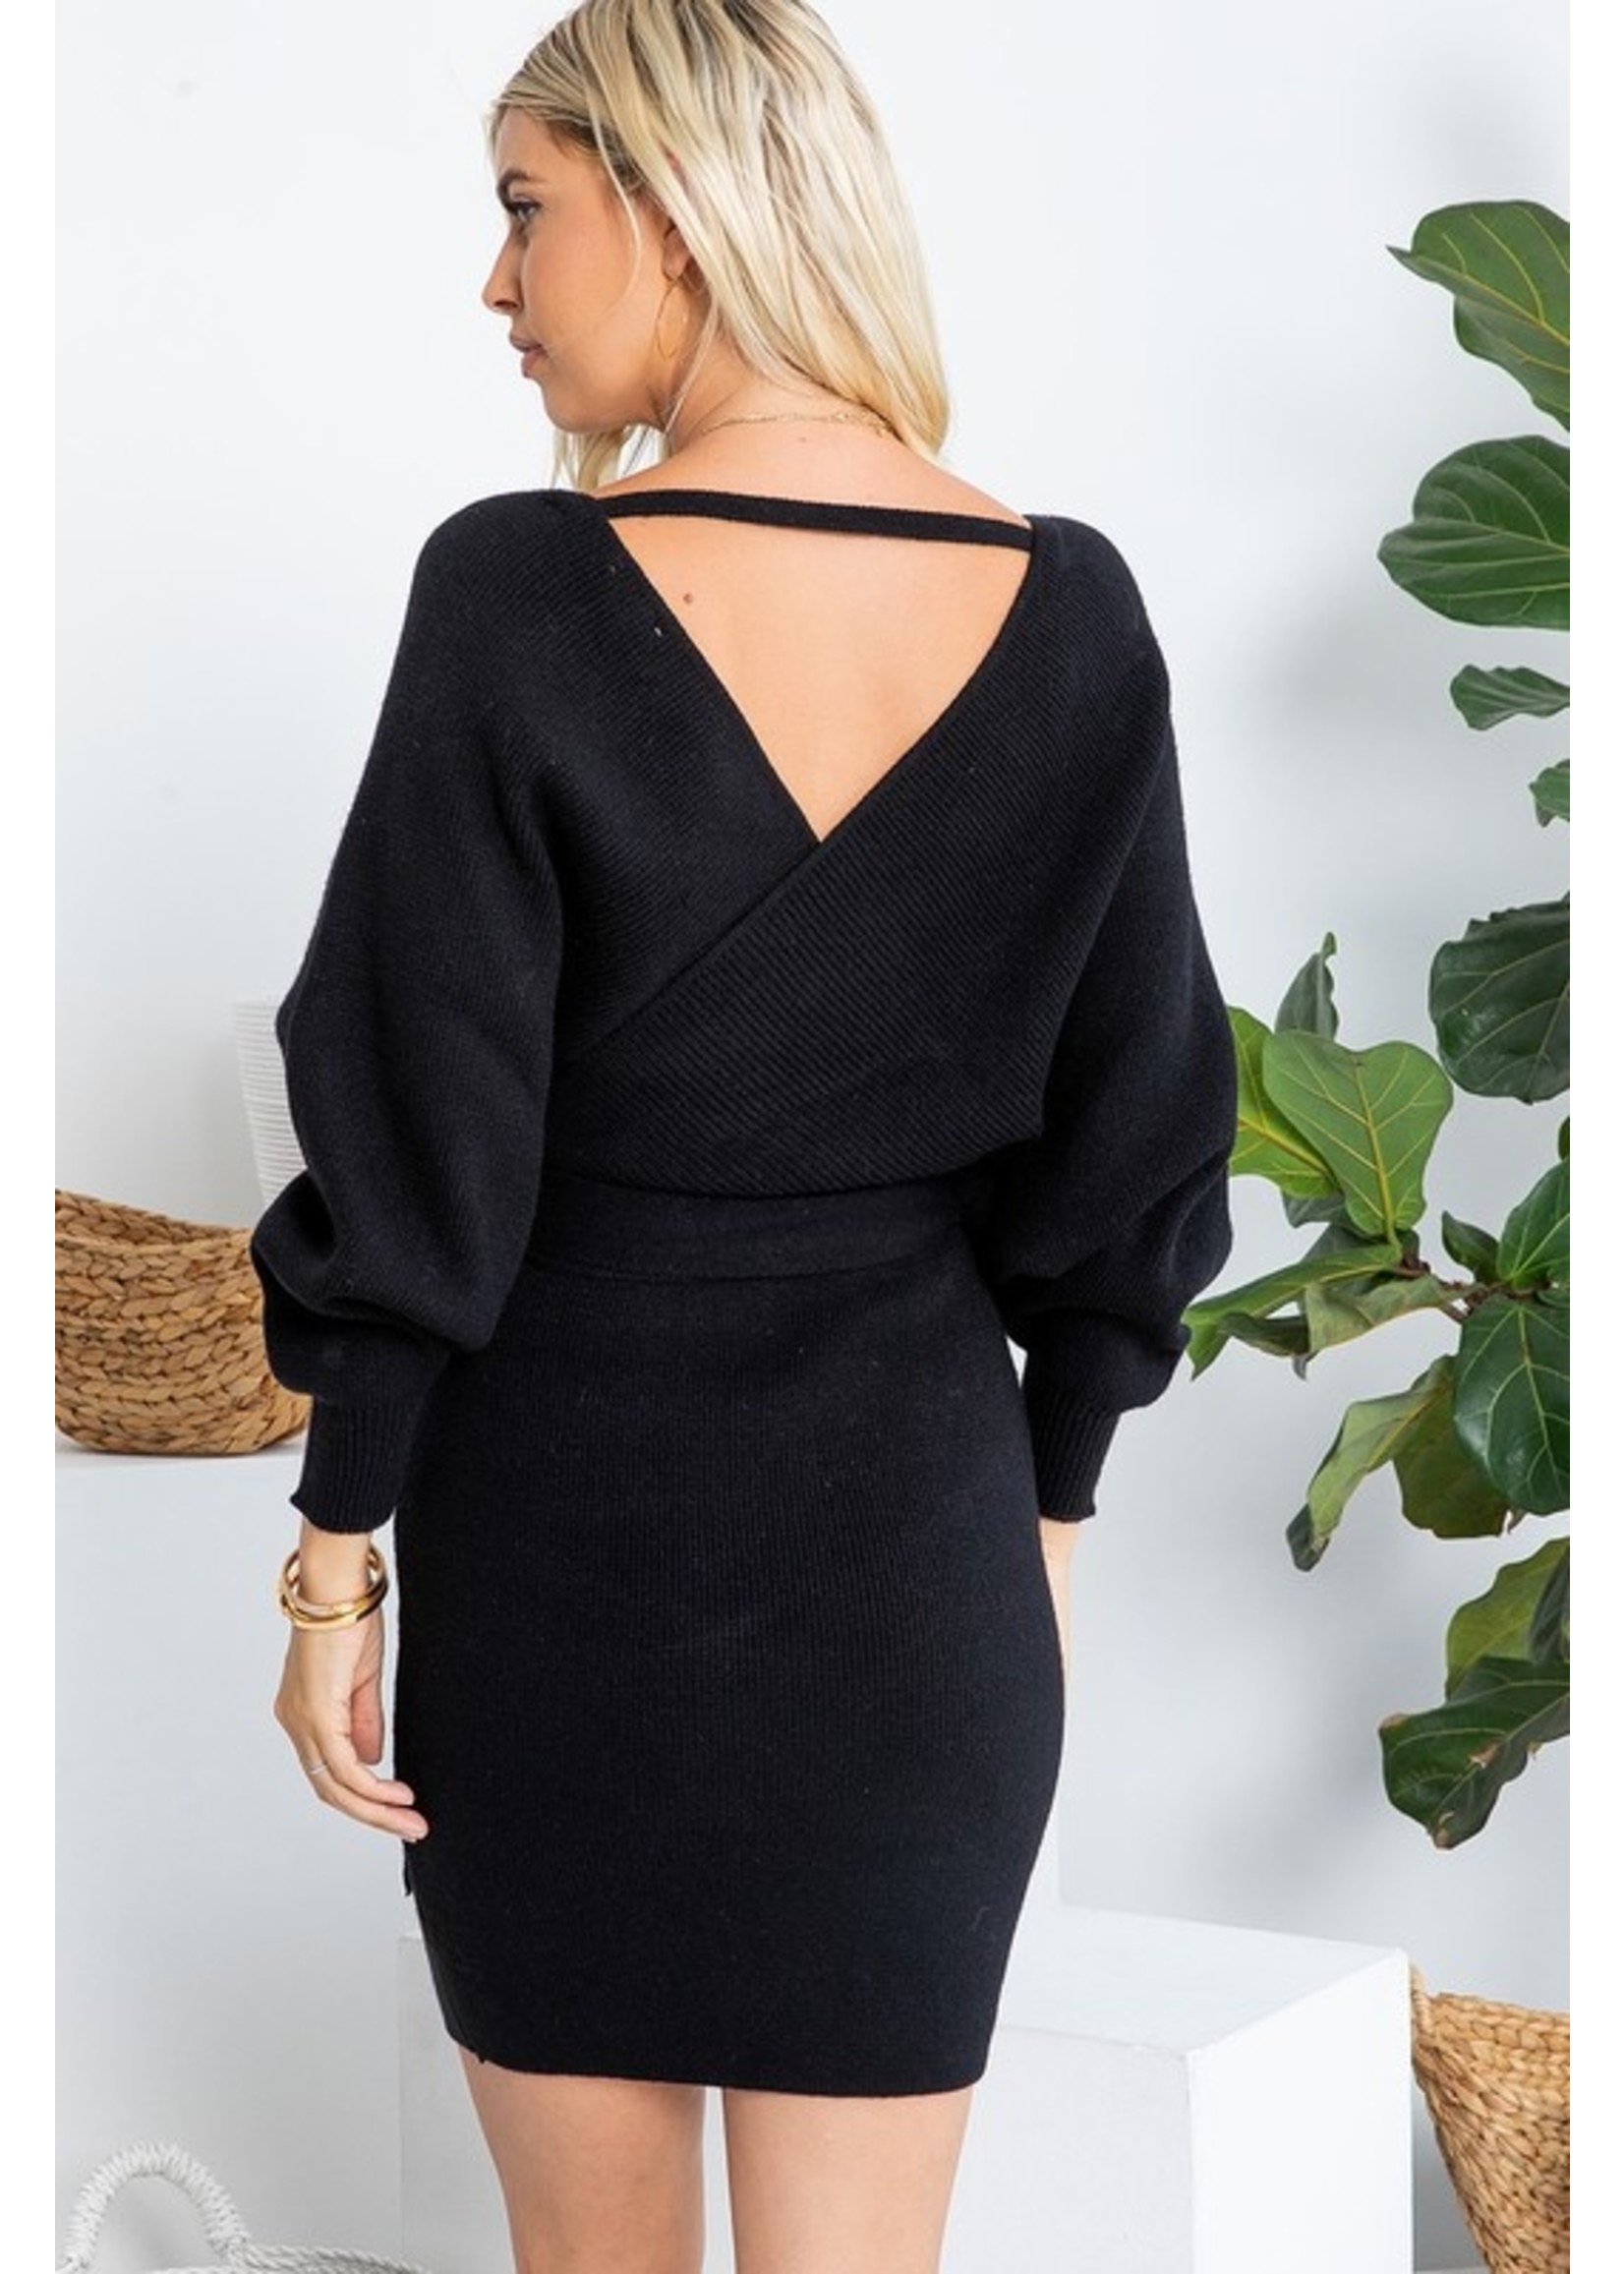 Sweet Lovely Triple "S" Sweater Dress Black